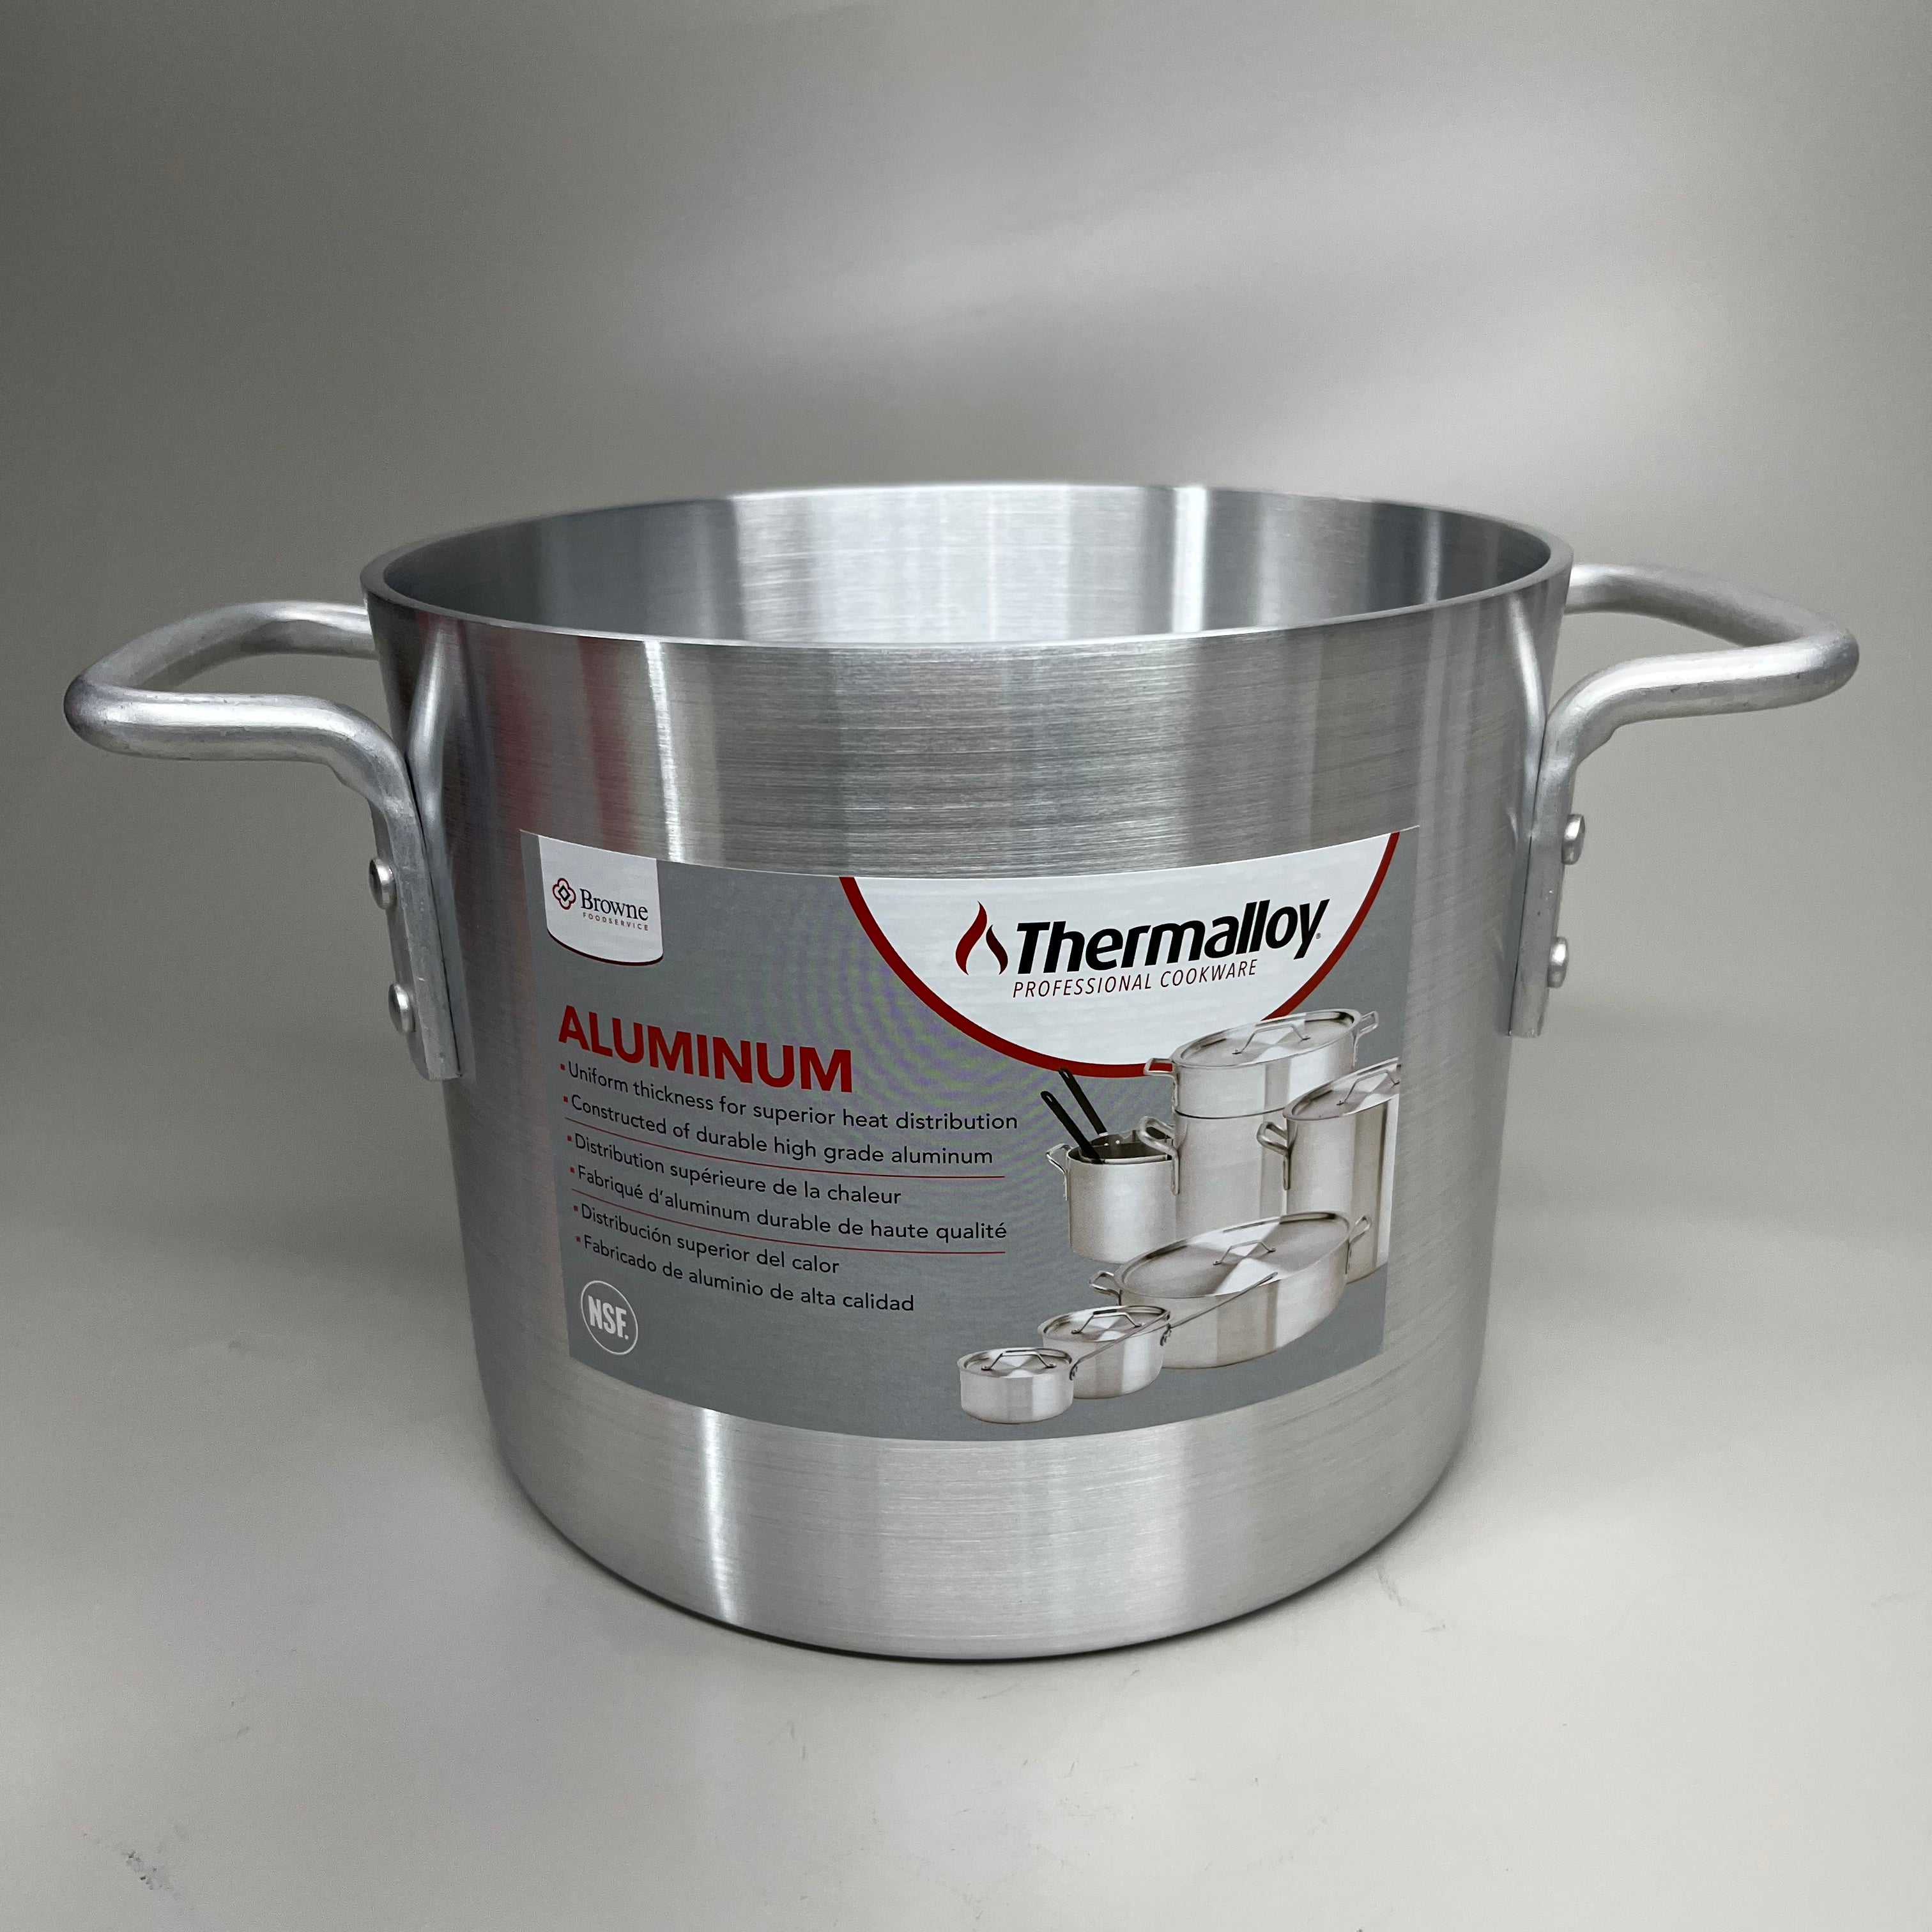 BROWNE Thermalloy Aluminum Stock Pot 8 quarts 5813108 (New)